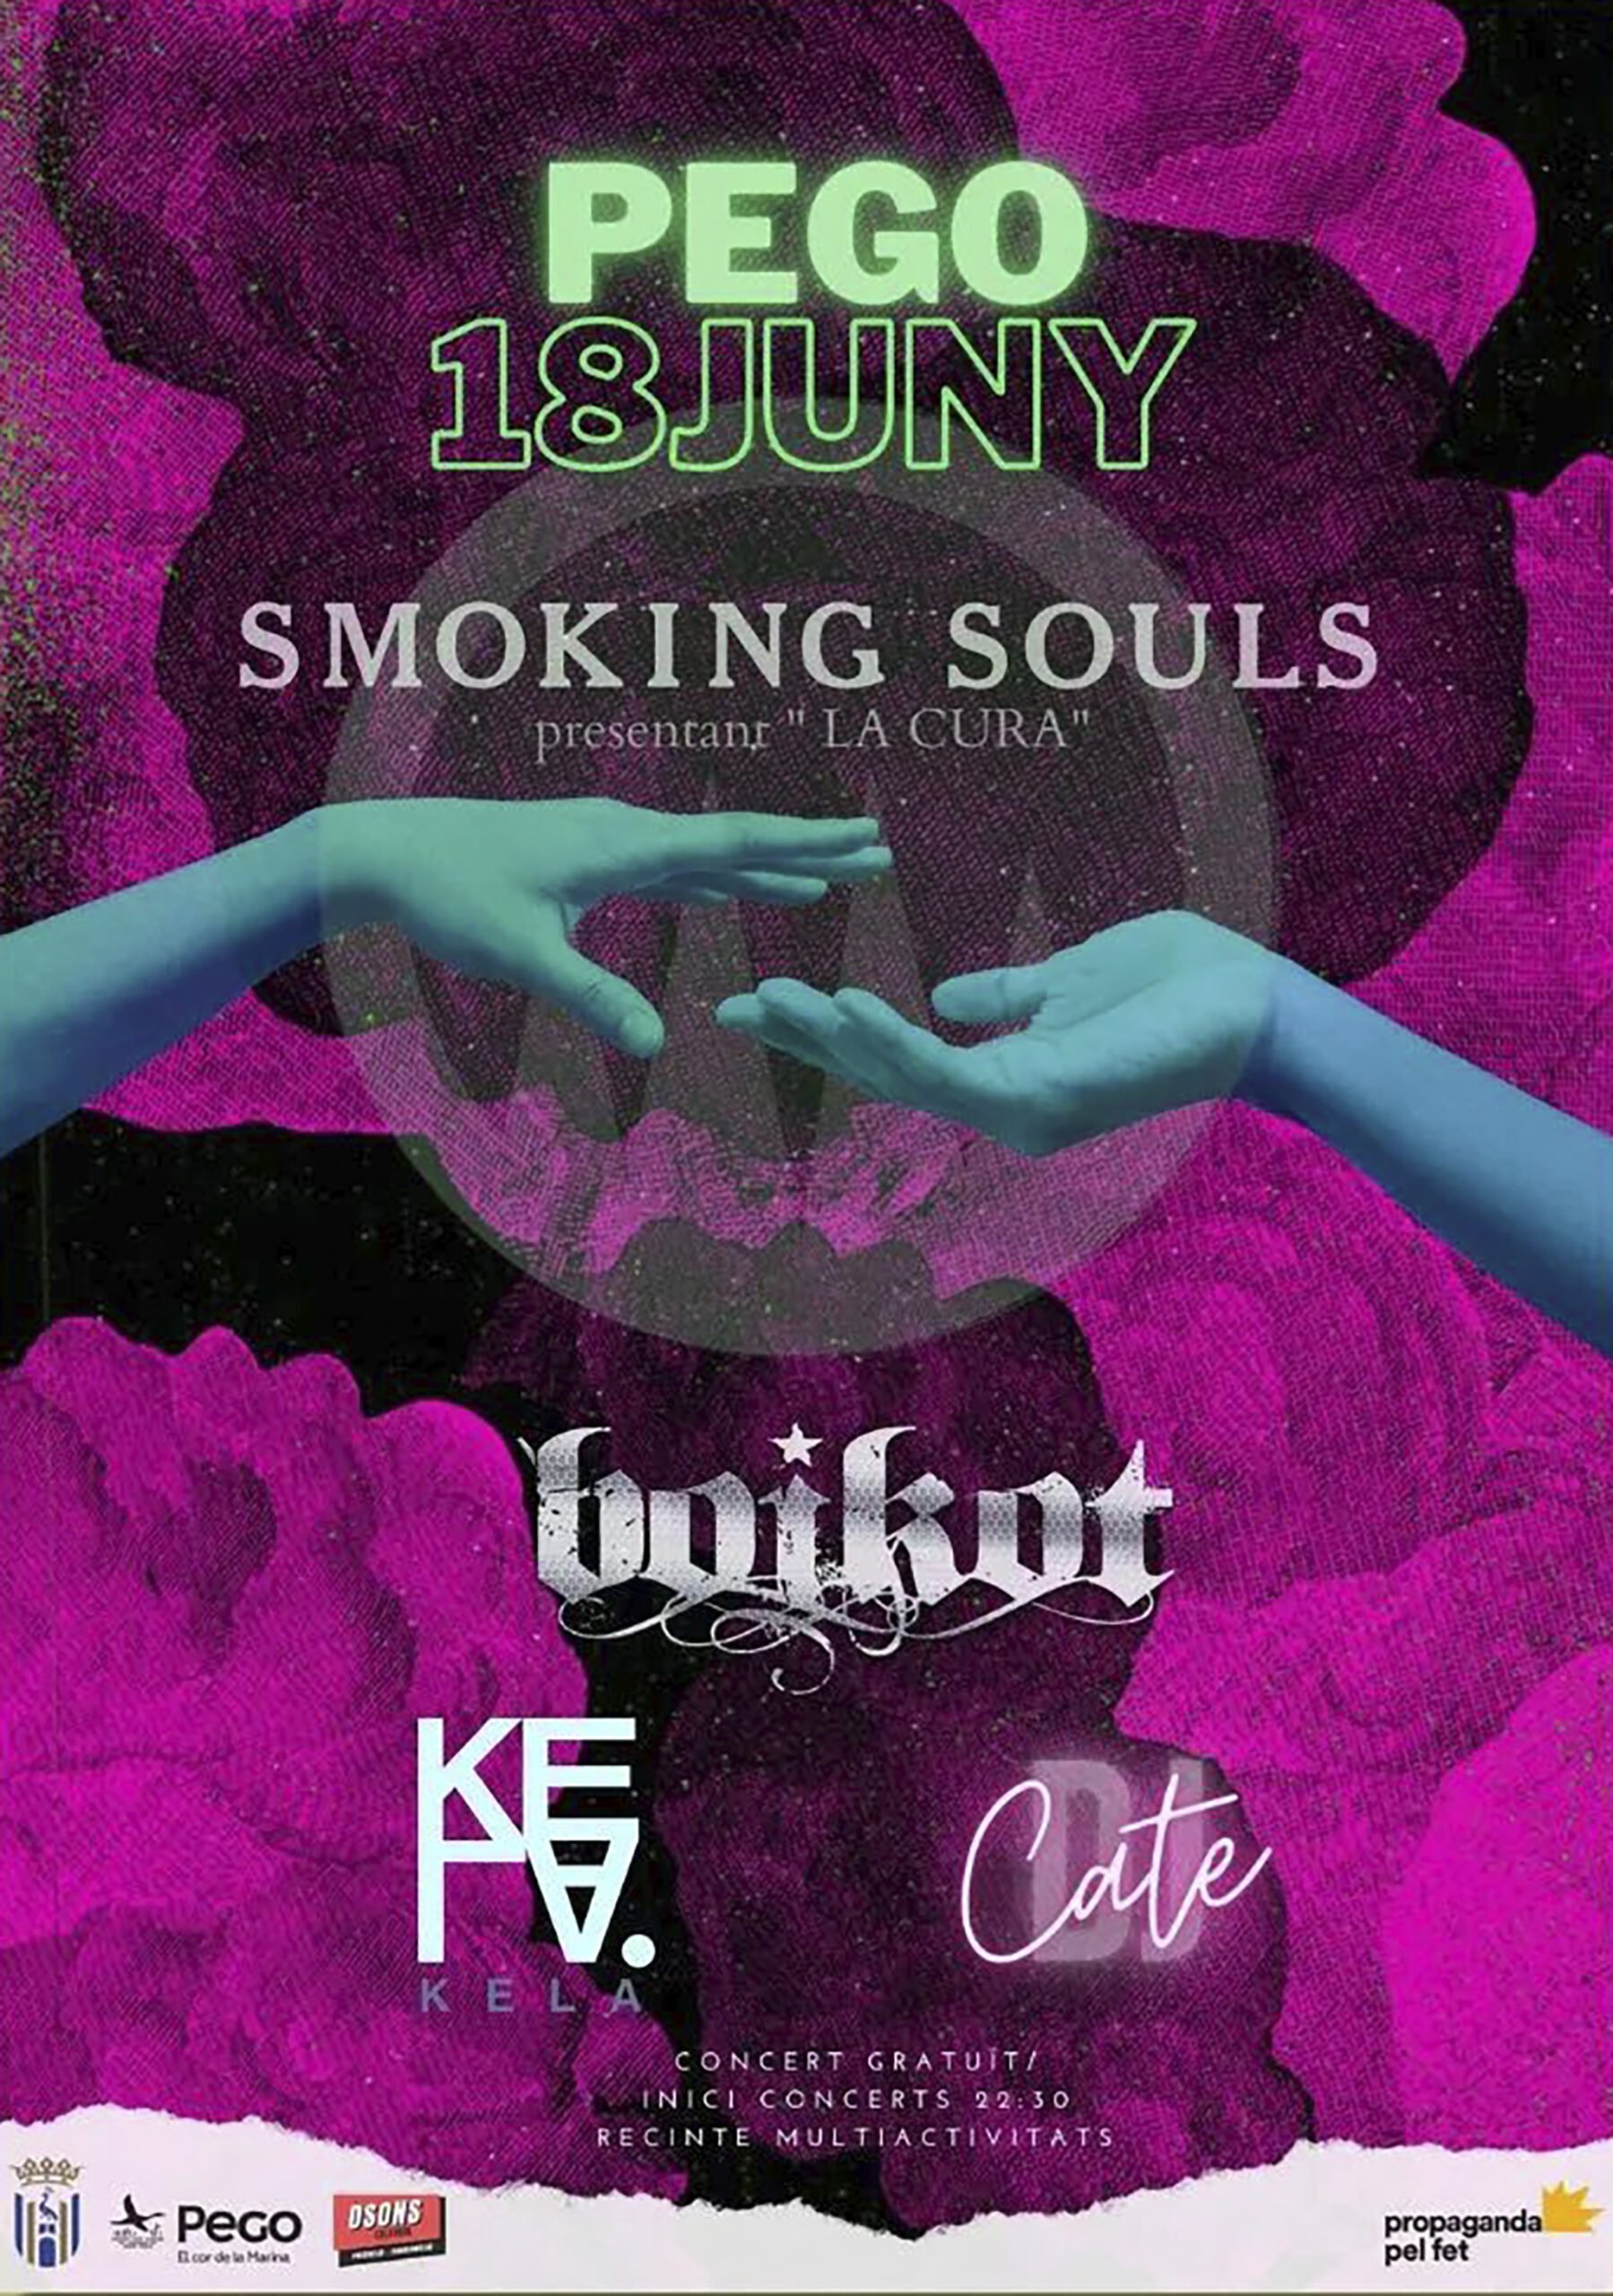 Cartel del concierto de Smoking Souls, Kela, Boikot y Dj Cate en Pego